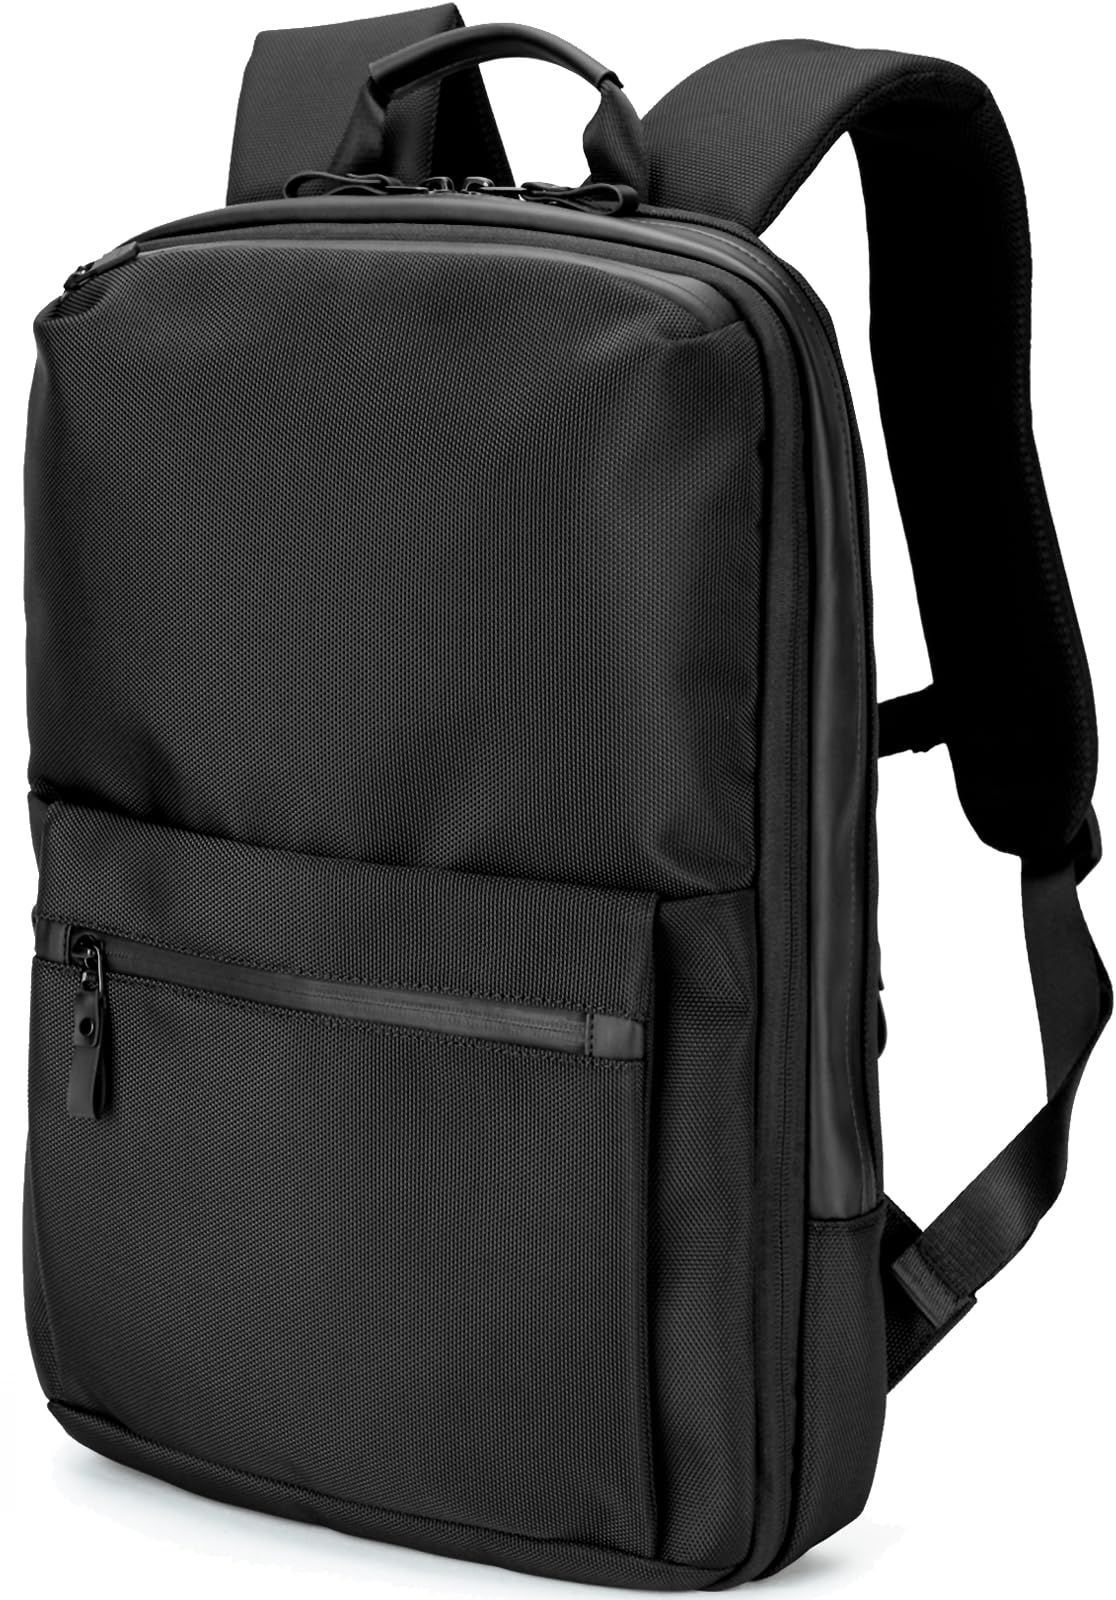 PC 薄い 15.6インチ 軽量 鞄 A4収納可 メンズ バッグ バックパック